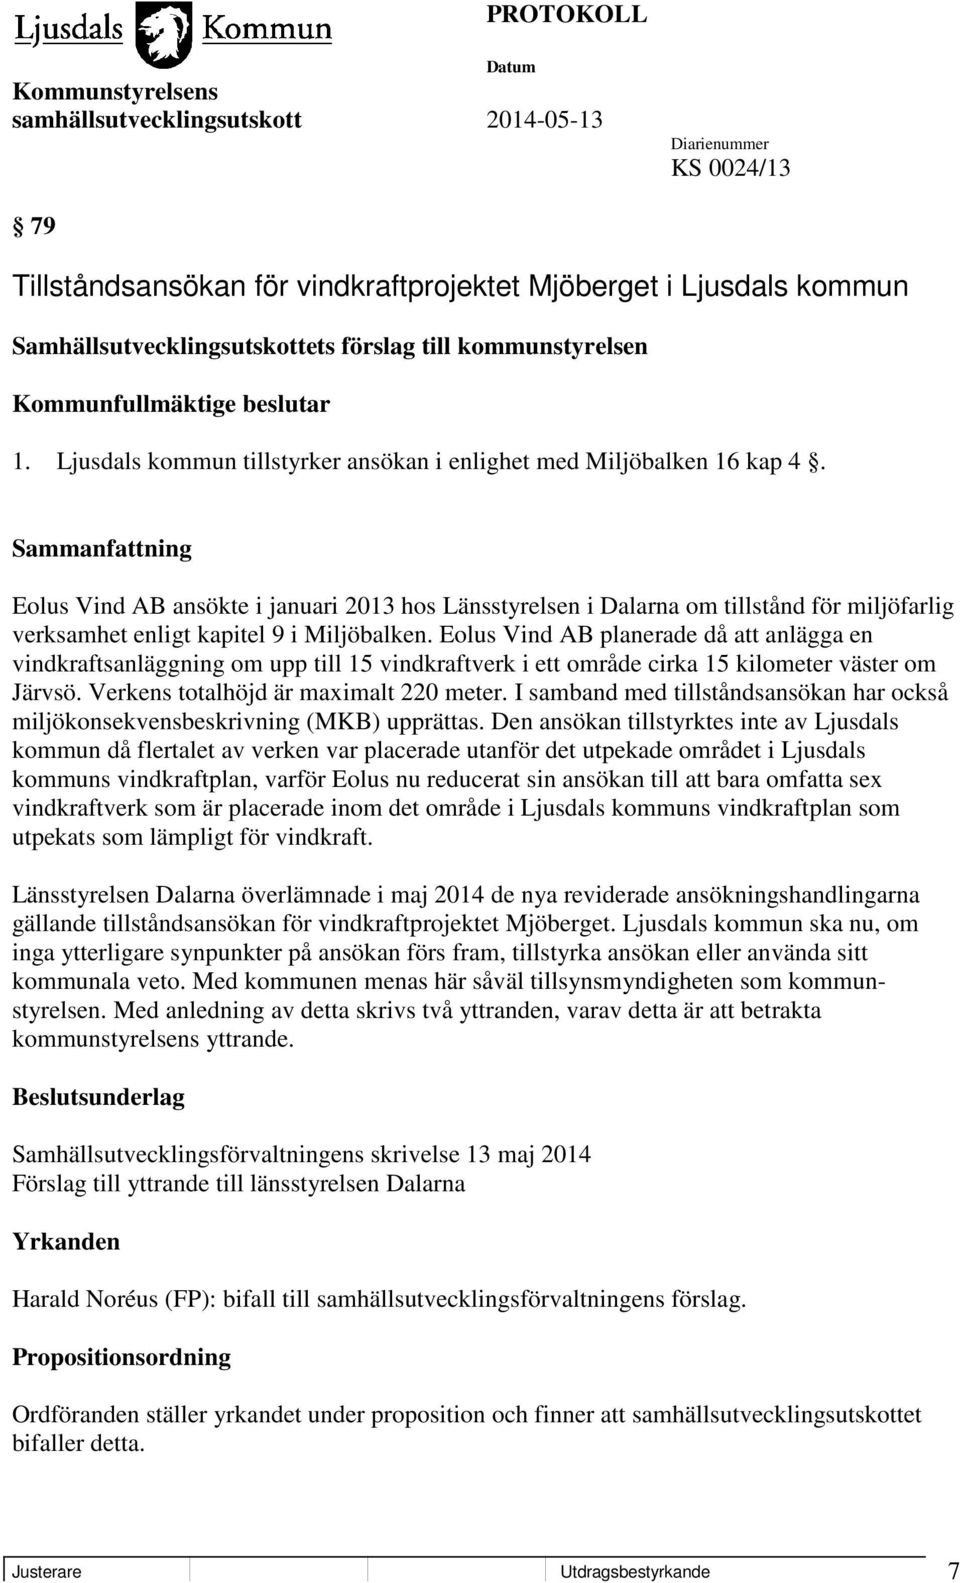 Eolus Vind AB ansökte i januari 2013 hos Länsstyrelsen i Dalarna om tillstånd för miljöfarlig verksamhet enligt kapitel 9 i Miljöbalken.